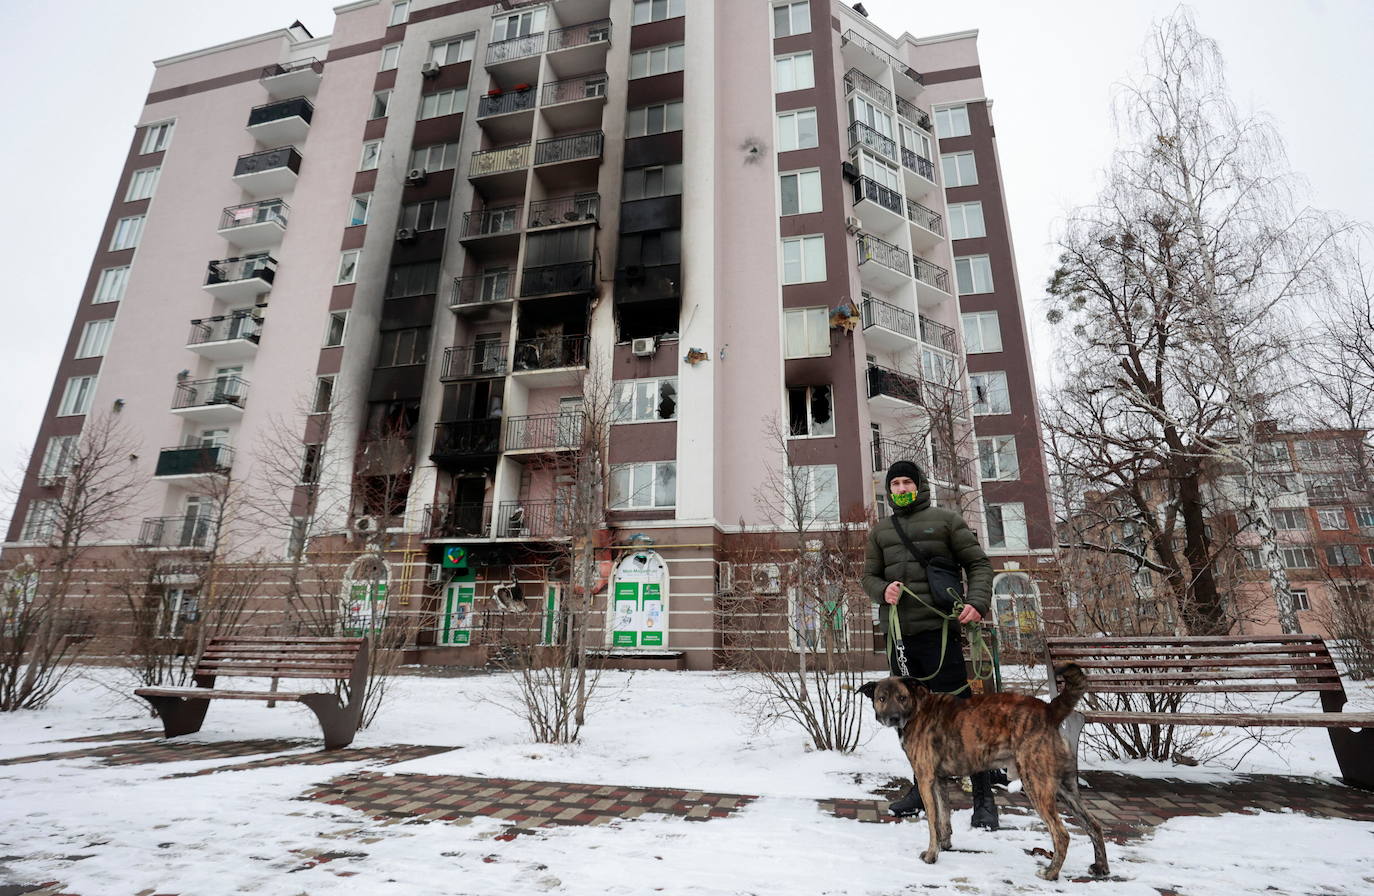 Un bloque de edificios de Bucha tras sufrir un ataque por parte del ejército ruso